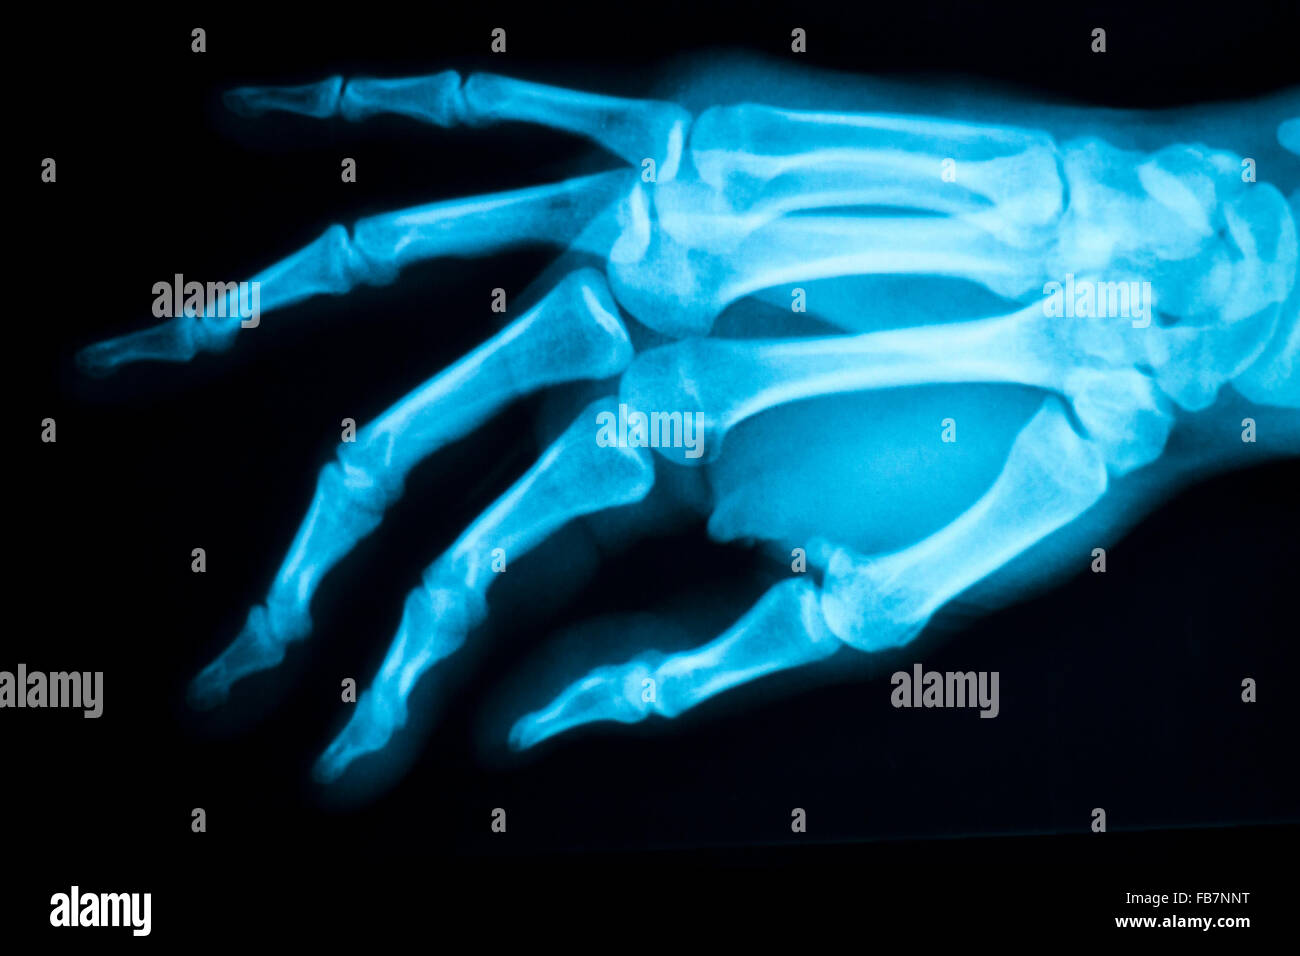 Mano, le dita e il pollice ospedale scansione a raggi x i risultati dei test per i dolori articolari e lesioni in medicina ortopedica e traumatologia clinica. Foto Stock